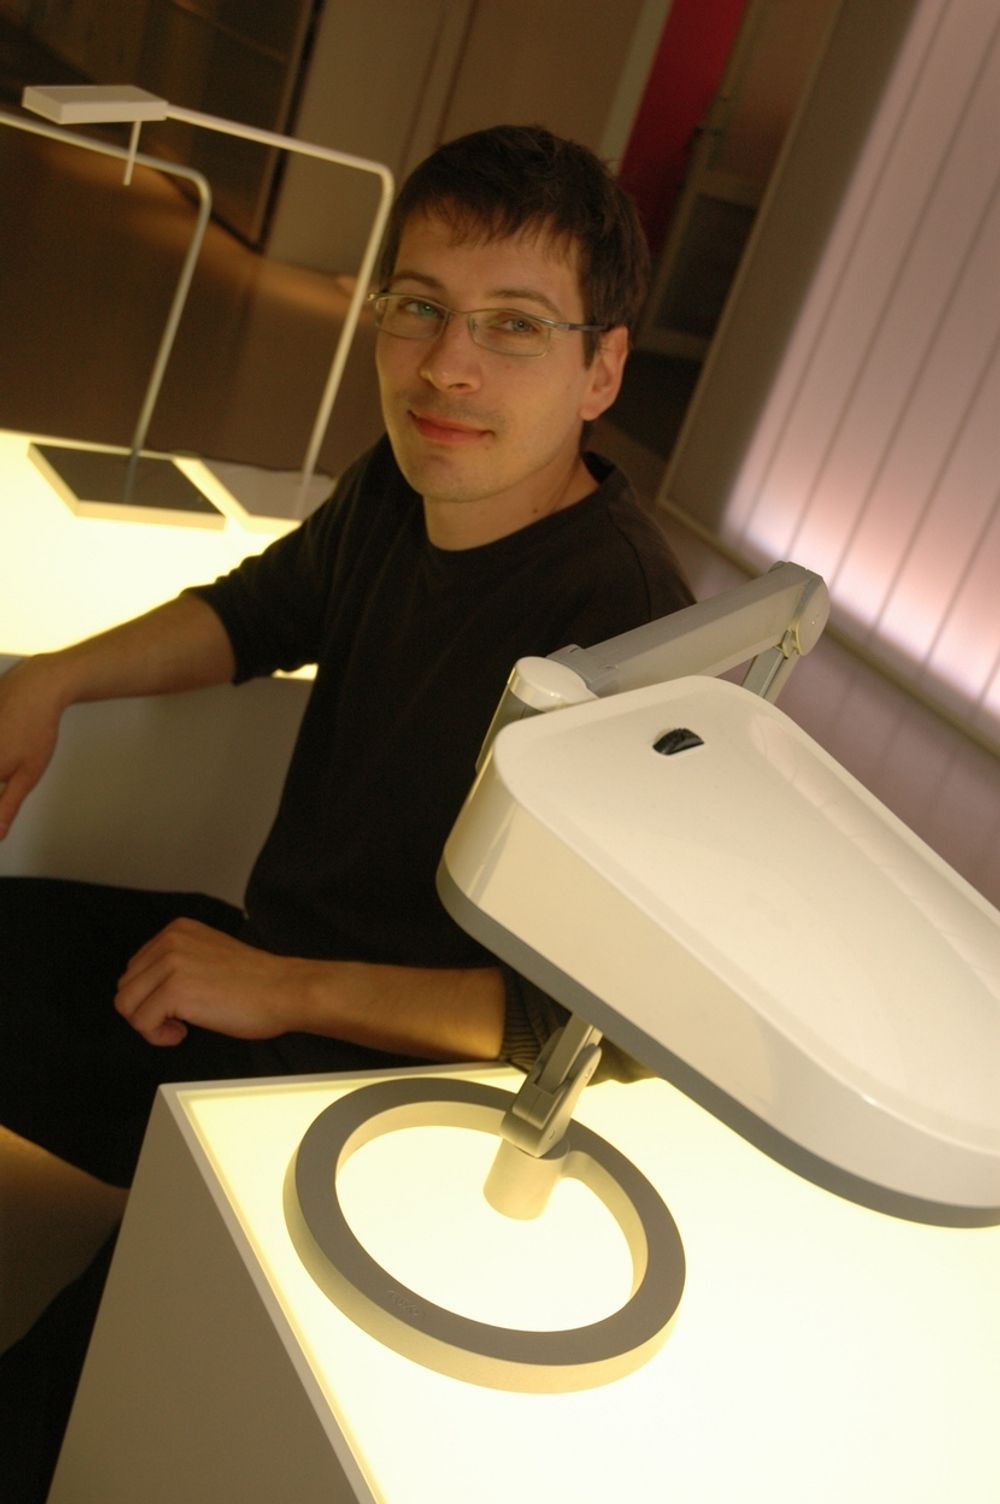 PÅ BORDET: Produktsjef Martin Holmberg hos Luxo mener LED er fantastisk egnet for bordlamper. - Dette er annen generasjon LED-lamper, sier han.